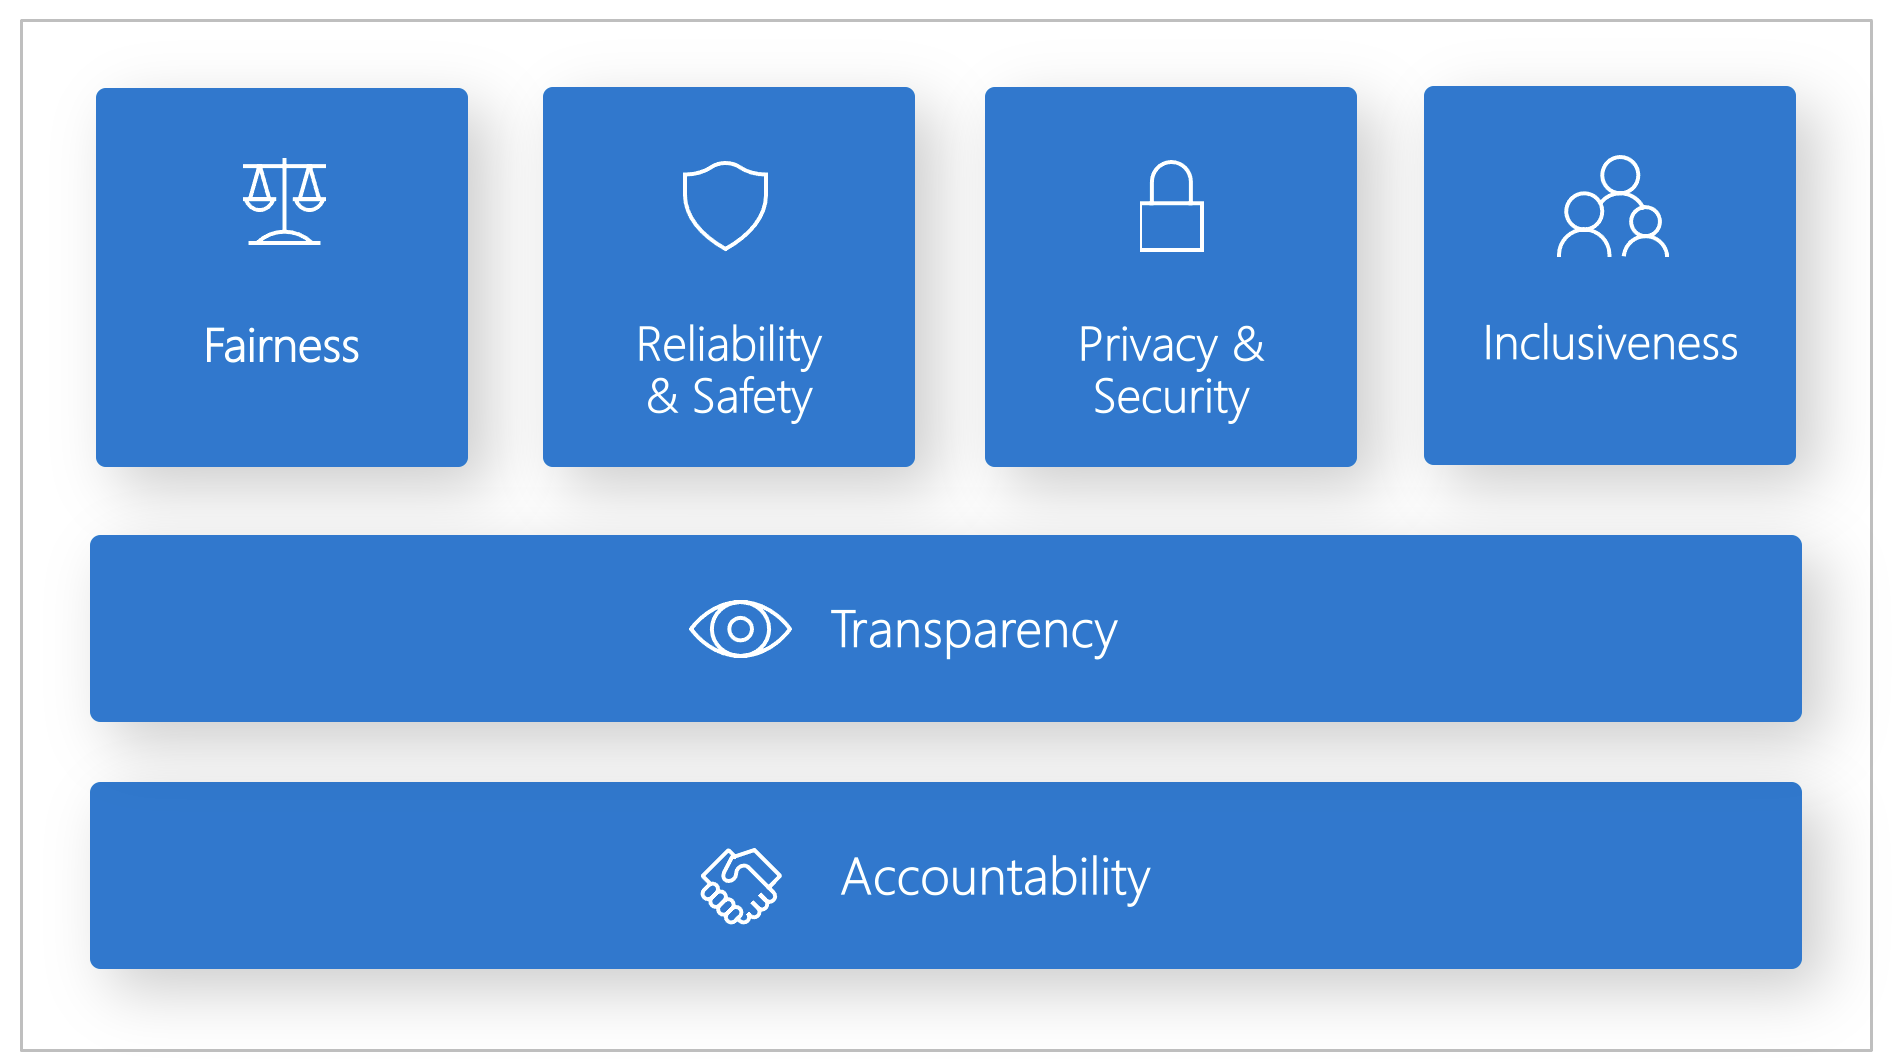 Diagramm: Sechs Microsoft-Prinzipien für verantwortungsvolle KI: Fairness, Zuverlässigkeit und Sicherheit, Datenschutz und Sicherheit, Inklusion, Transparenz sowie Verantwortlichkeit